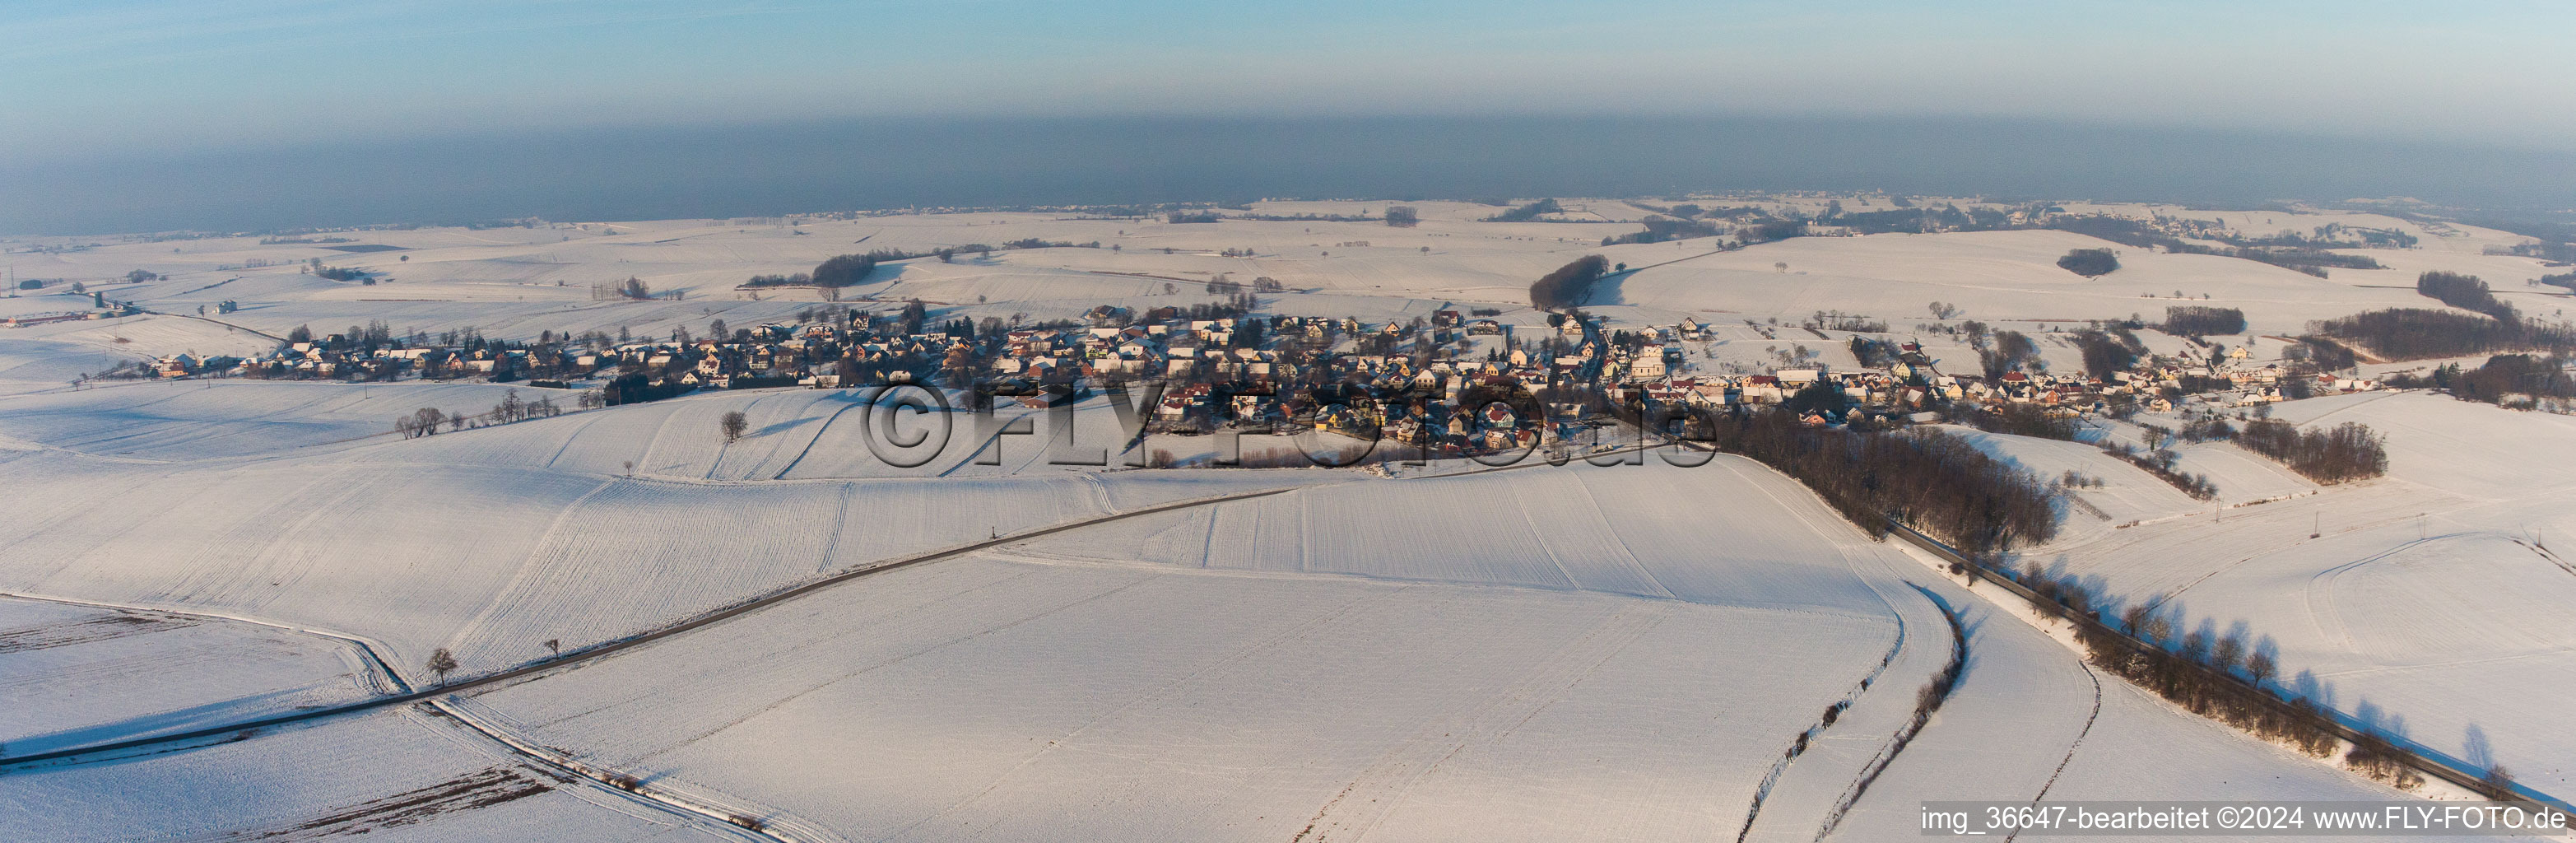 Panorama der winterlich schneebedeckten Dorf - Ansicht am Rande von landwirtschaftlichen Feldern und Nutzflächen in Wintzenbach in Grand Est im Bundesland Bas-Rhin, Frankreich